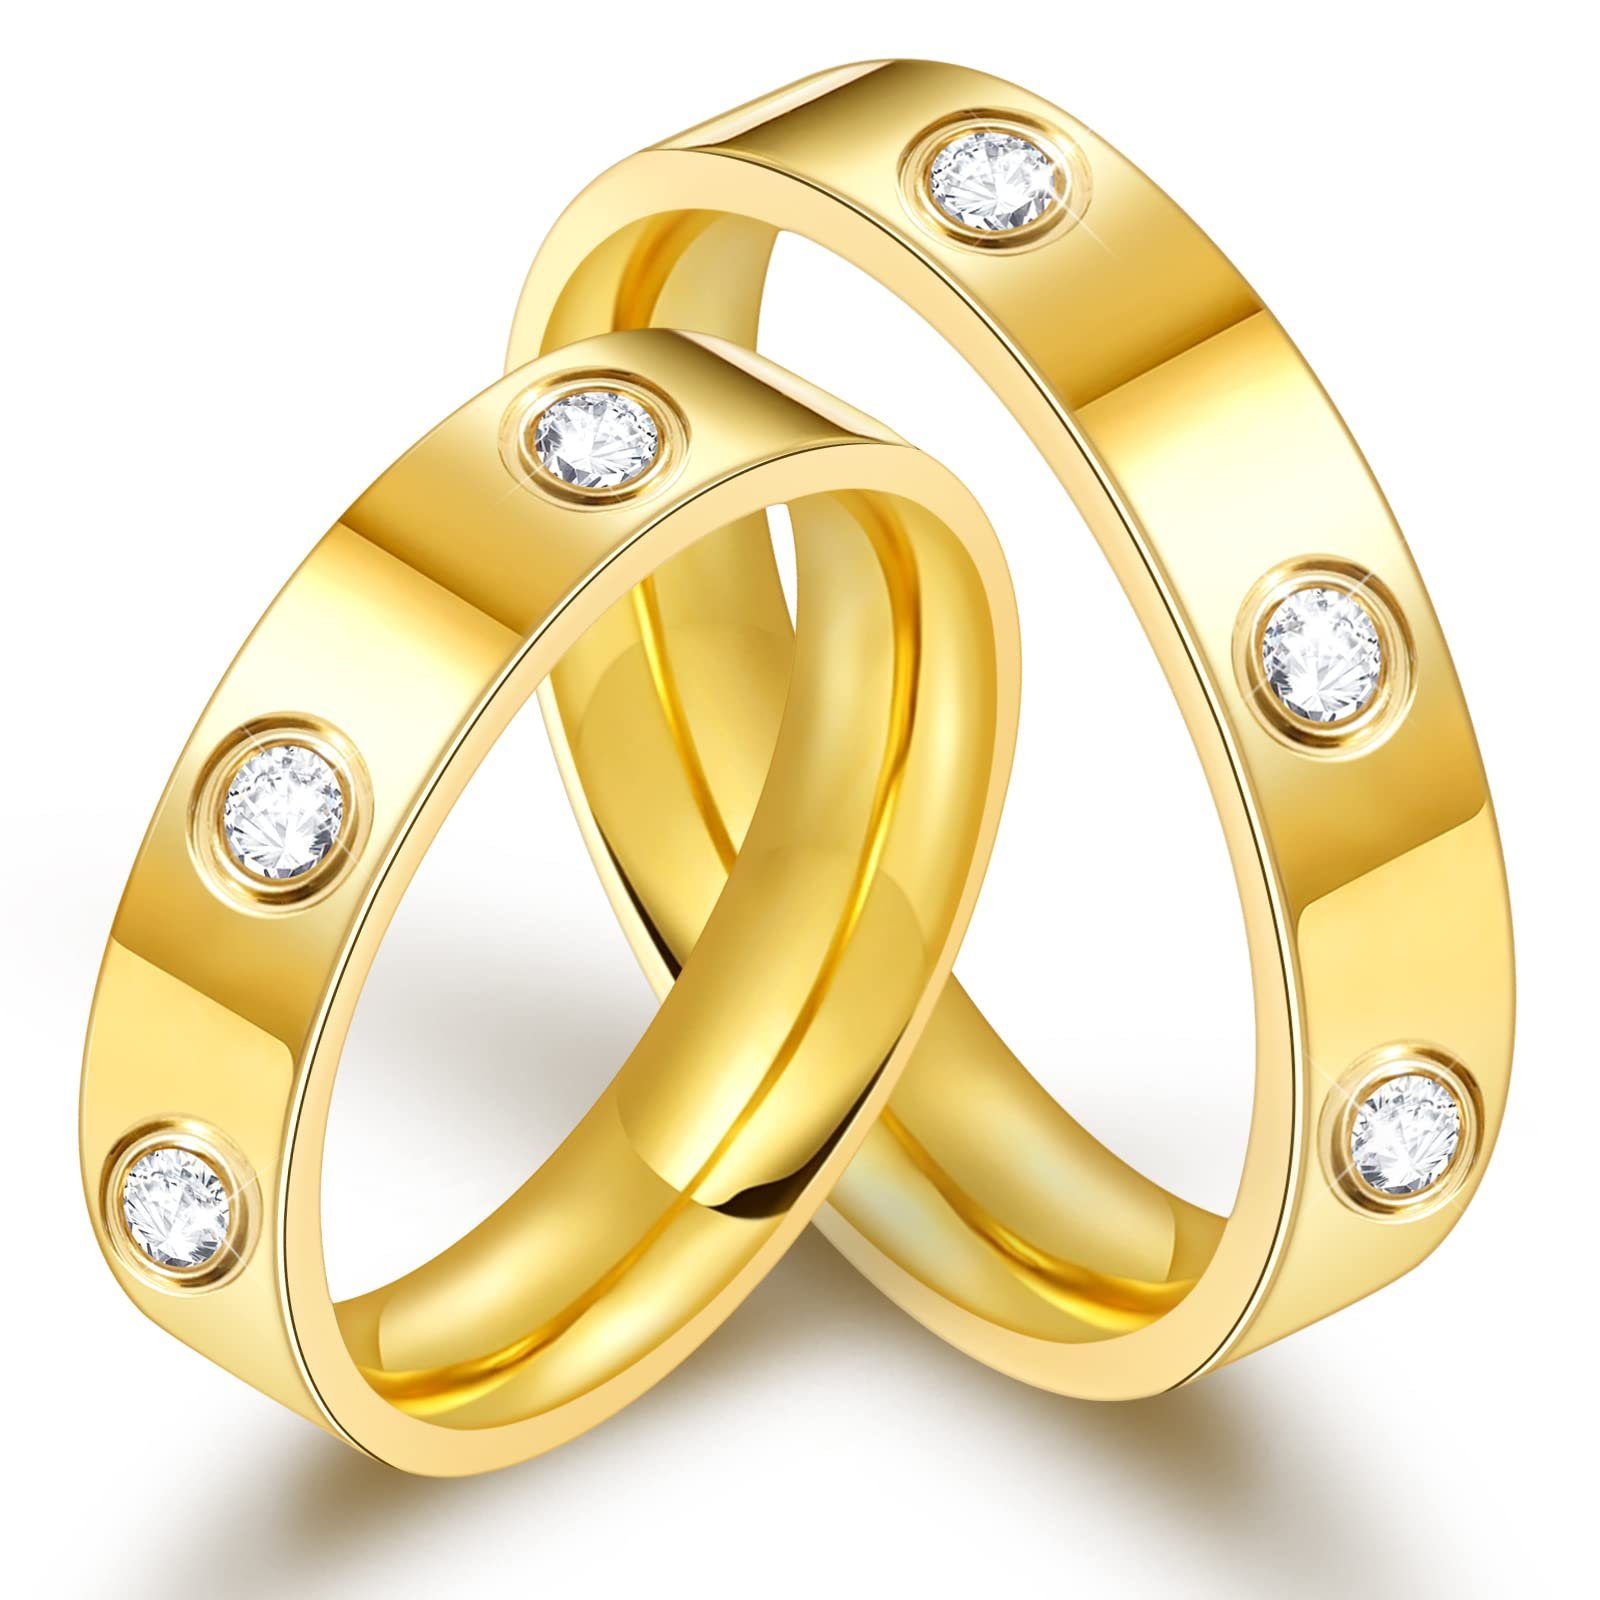 POCHUMIDUU Fingerring Gold Damen Zirkonia Mode Trend Ring, Silberschmuck für Frauen aus 925er Sterlingsilber